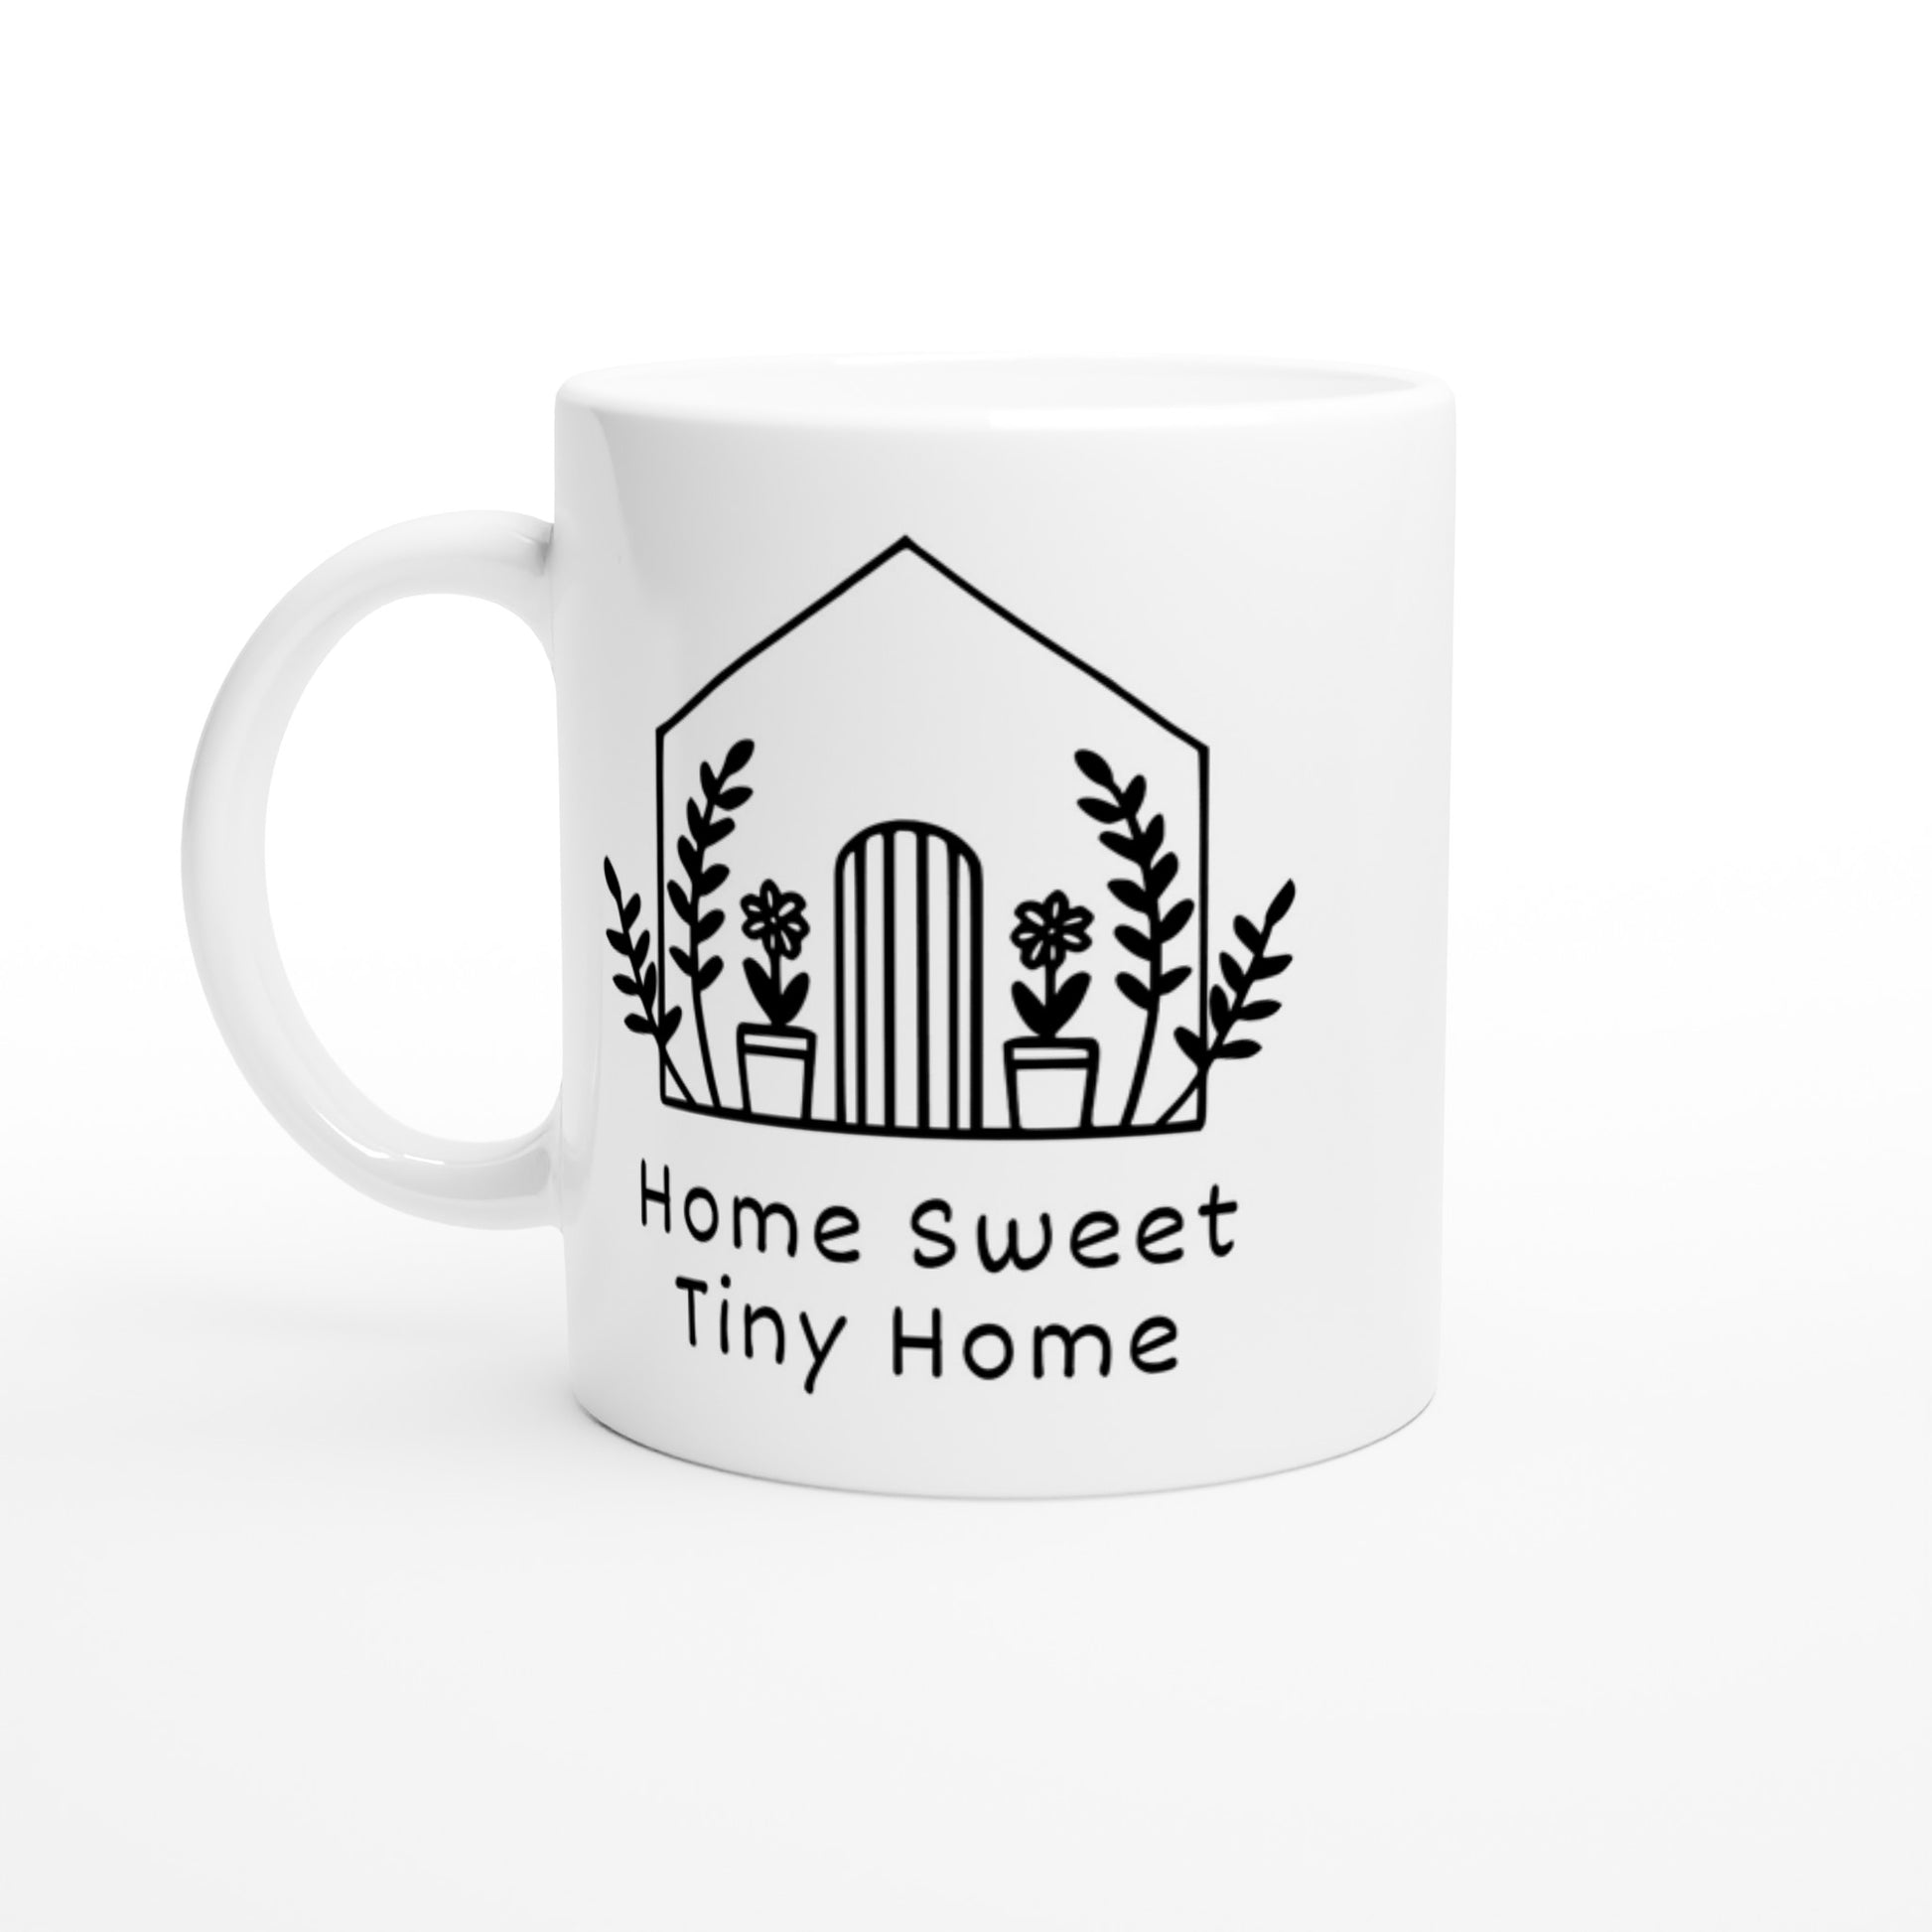 Home sweet tiny home, coffee mugs.